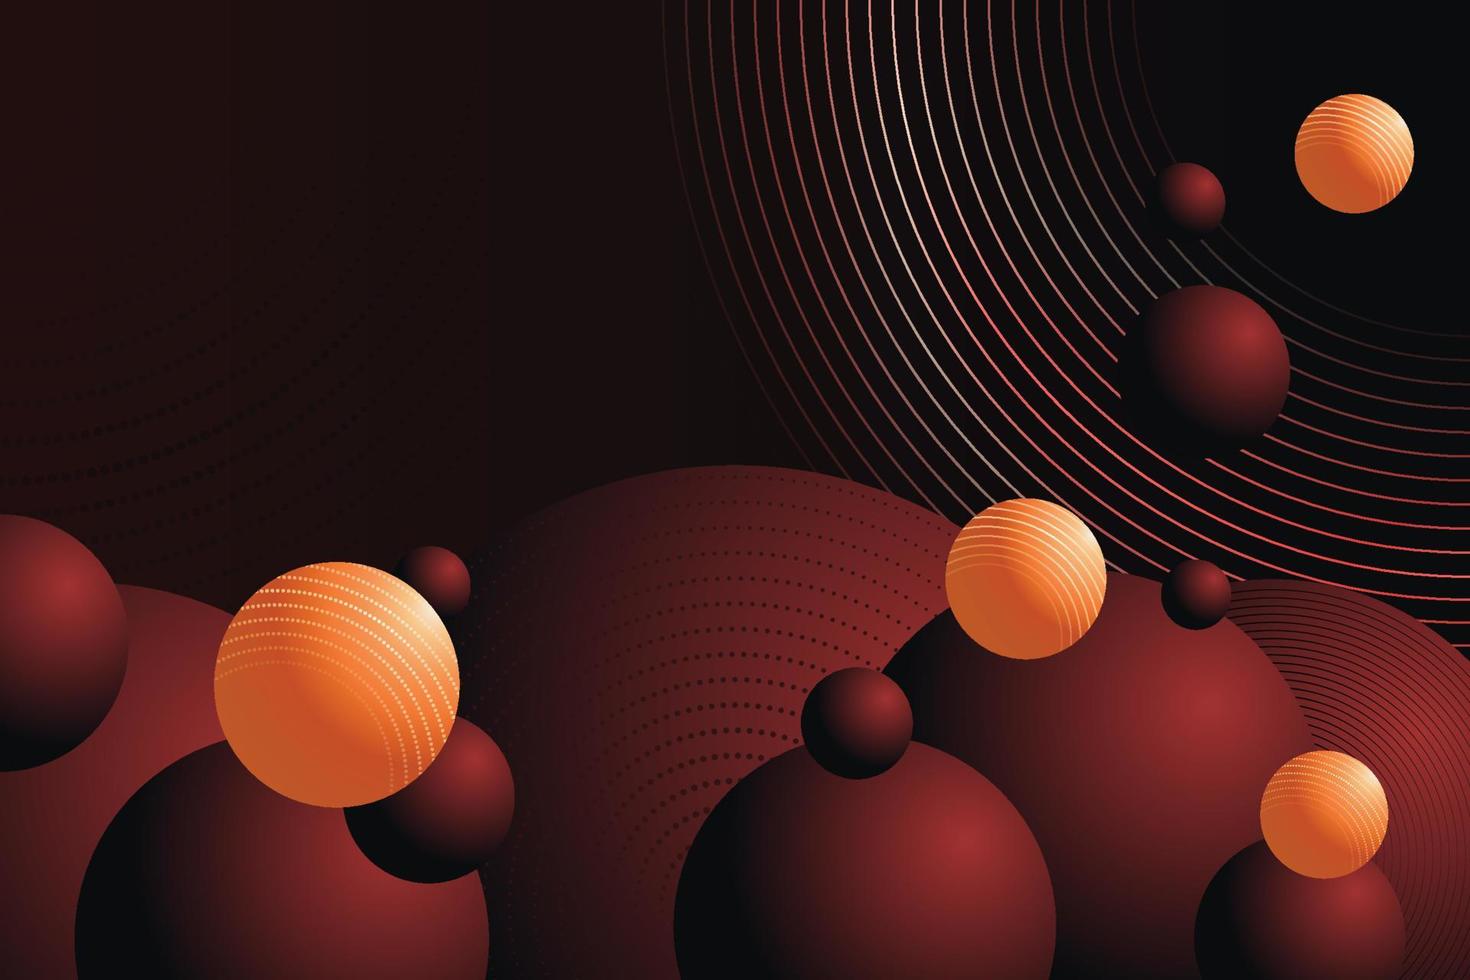 Hintergrund der roten und orangefarbenen Kugeln. abstrakte Abbildung der Zusammensetzung der Discokugeln vektor